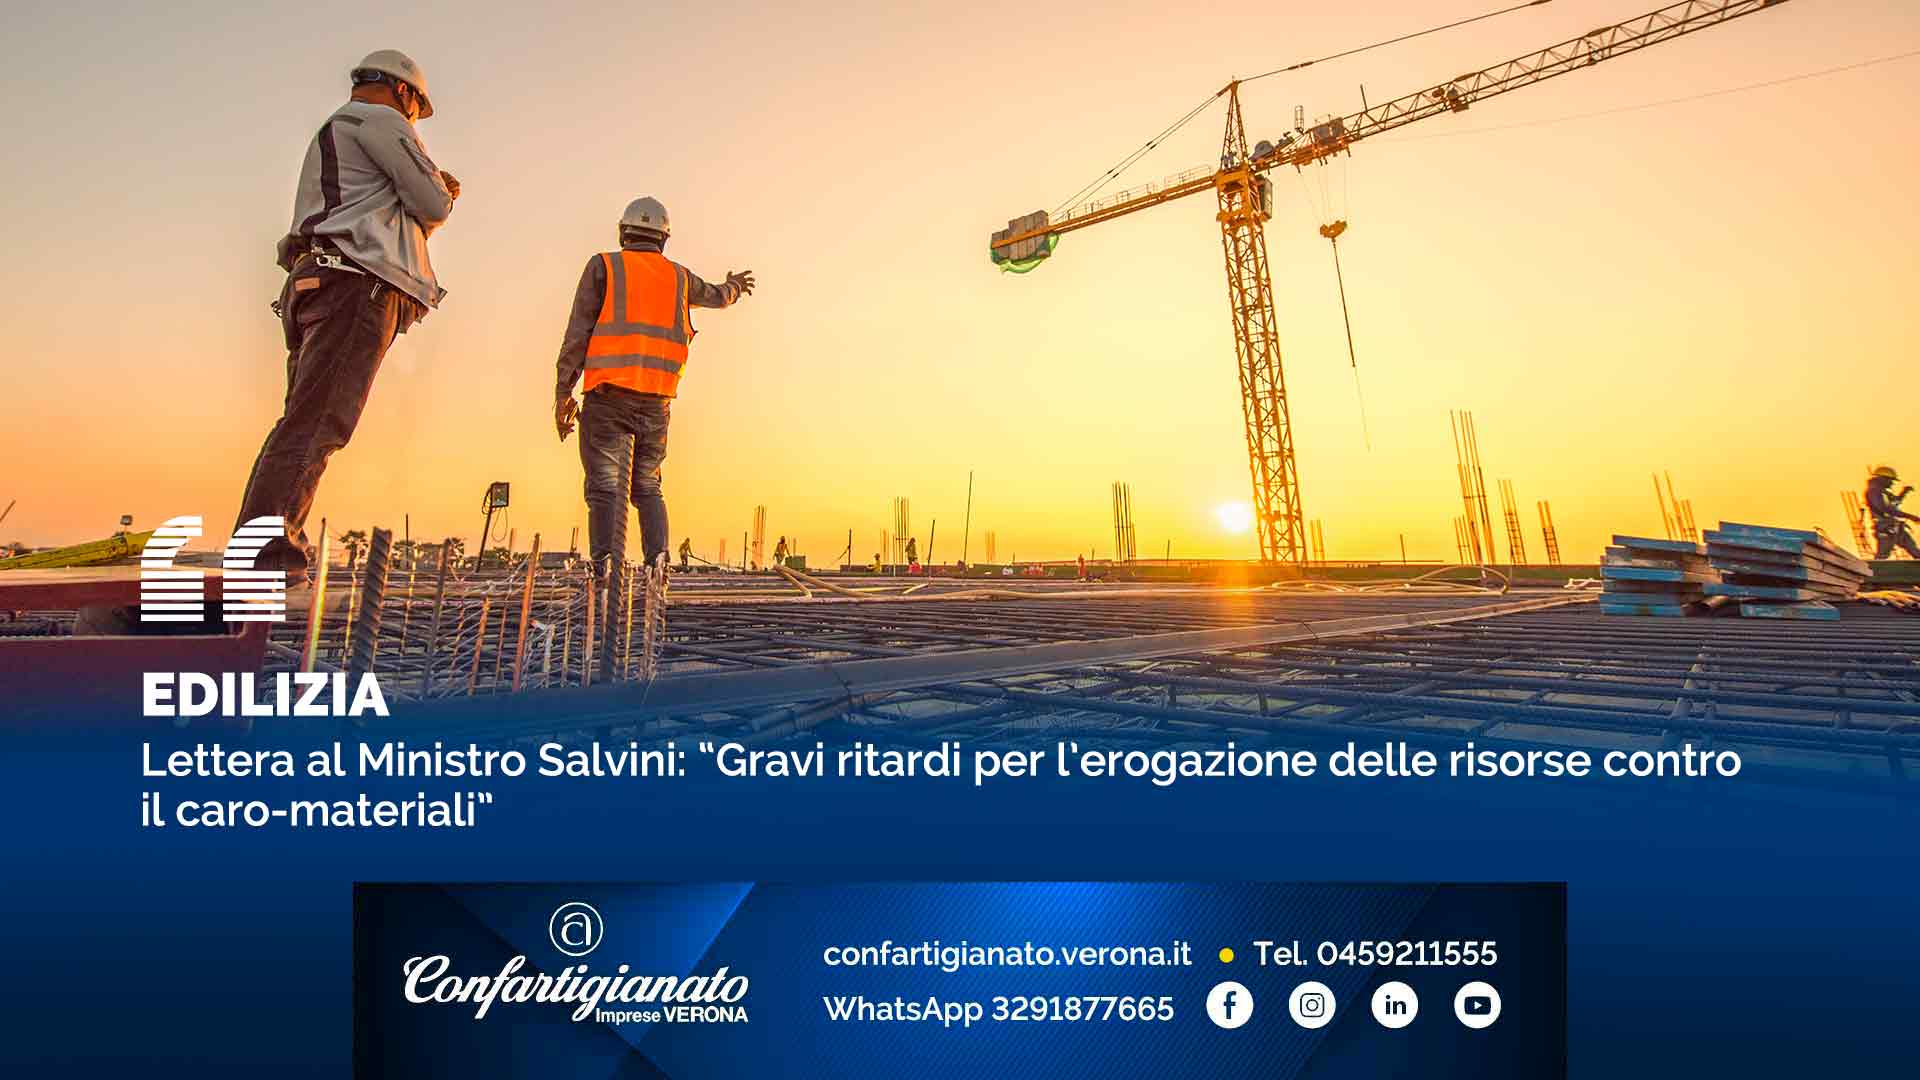 EDILIZIA – Lettera al Ministro Salvini: “Gravi ritardi per erogazione risorse contro caro-materiali”